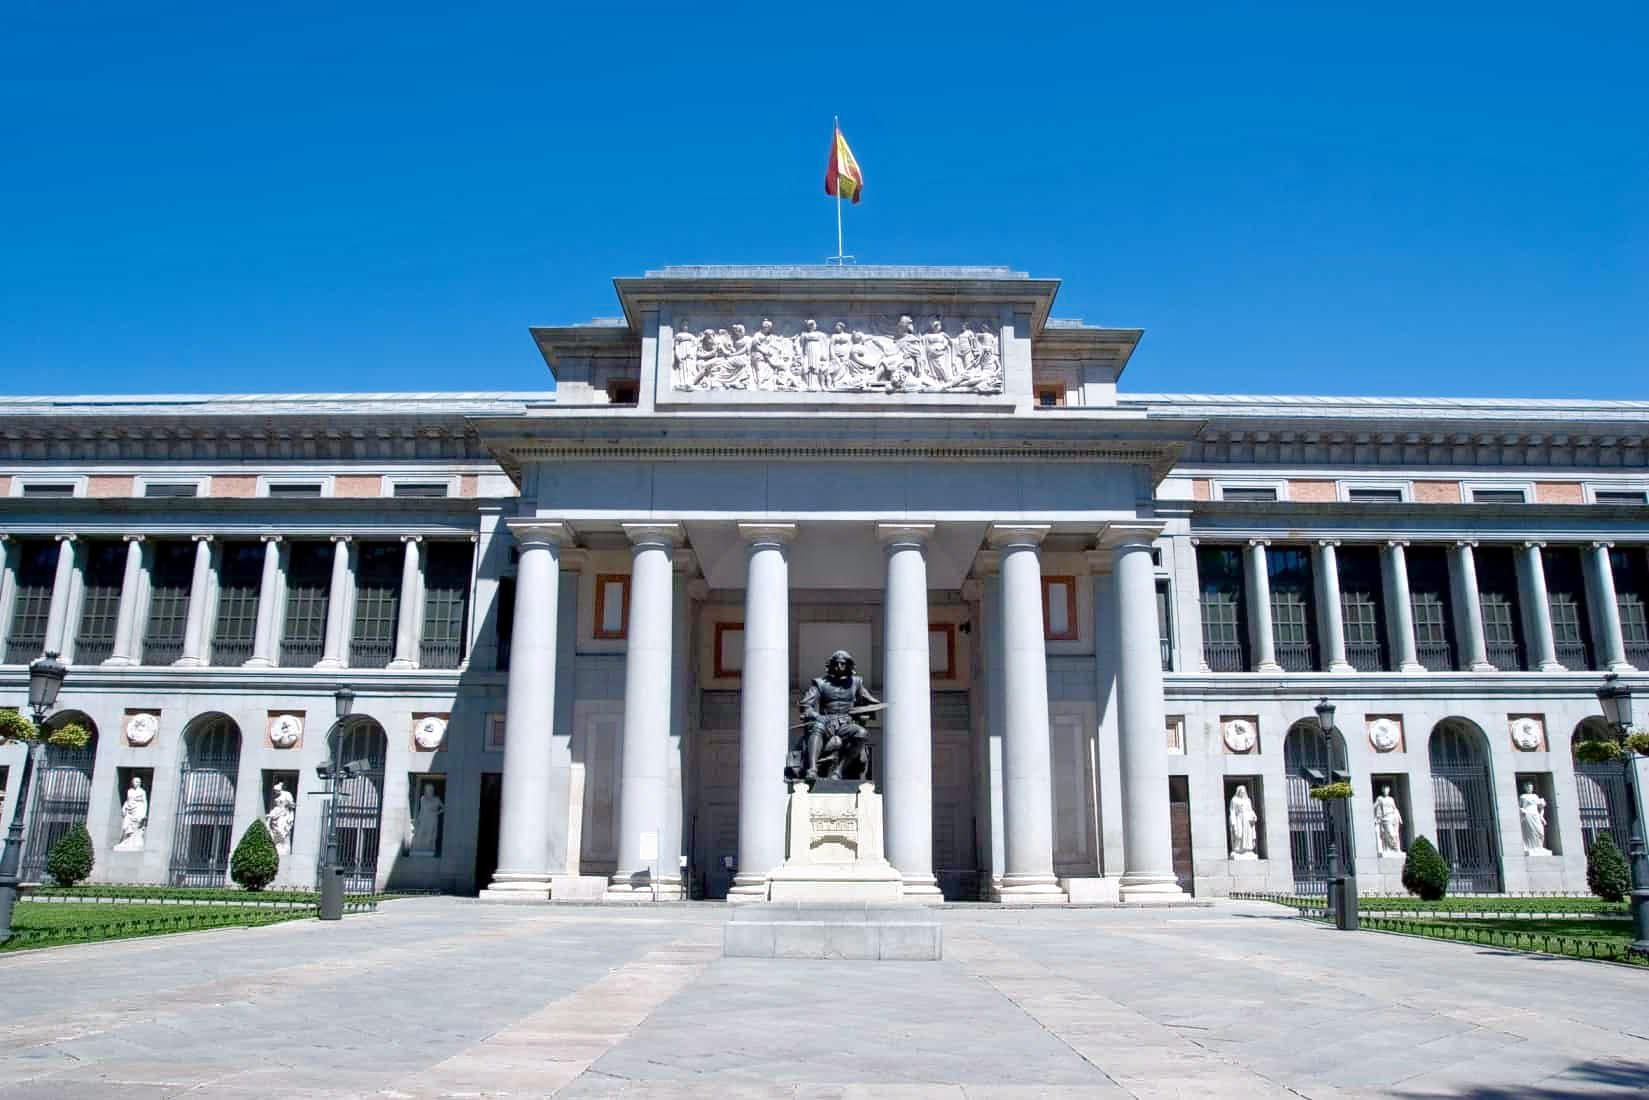 Museo Nacional Del Prado Overview